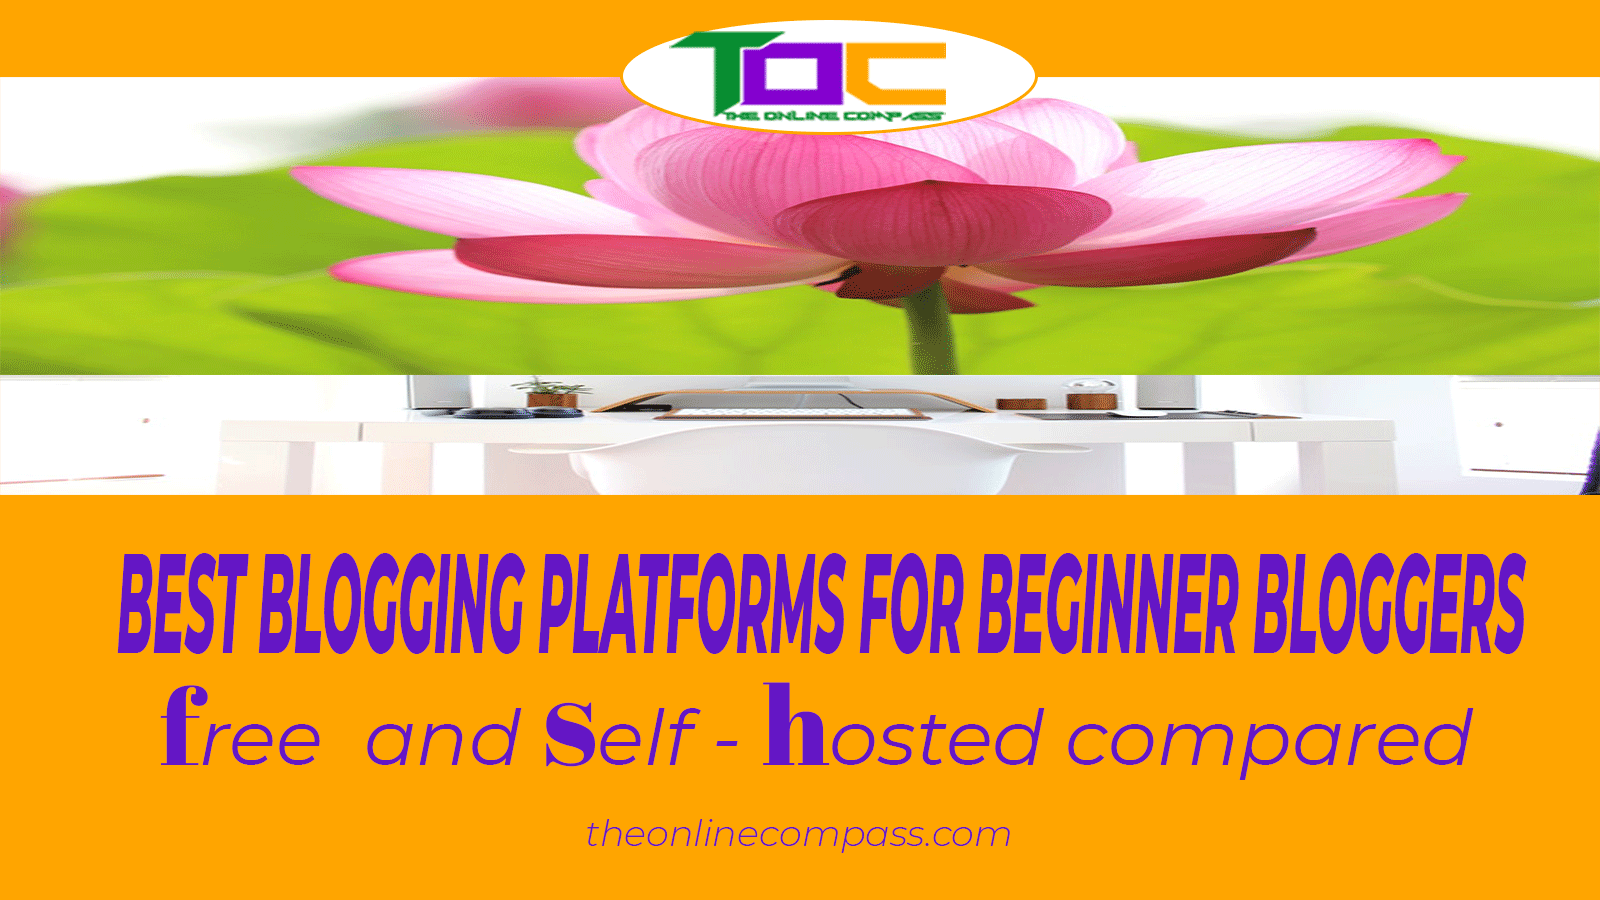 Best blogging platforms: Free or self hosted sites